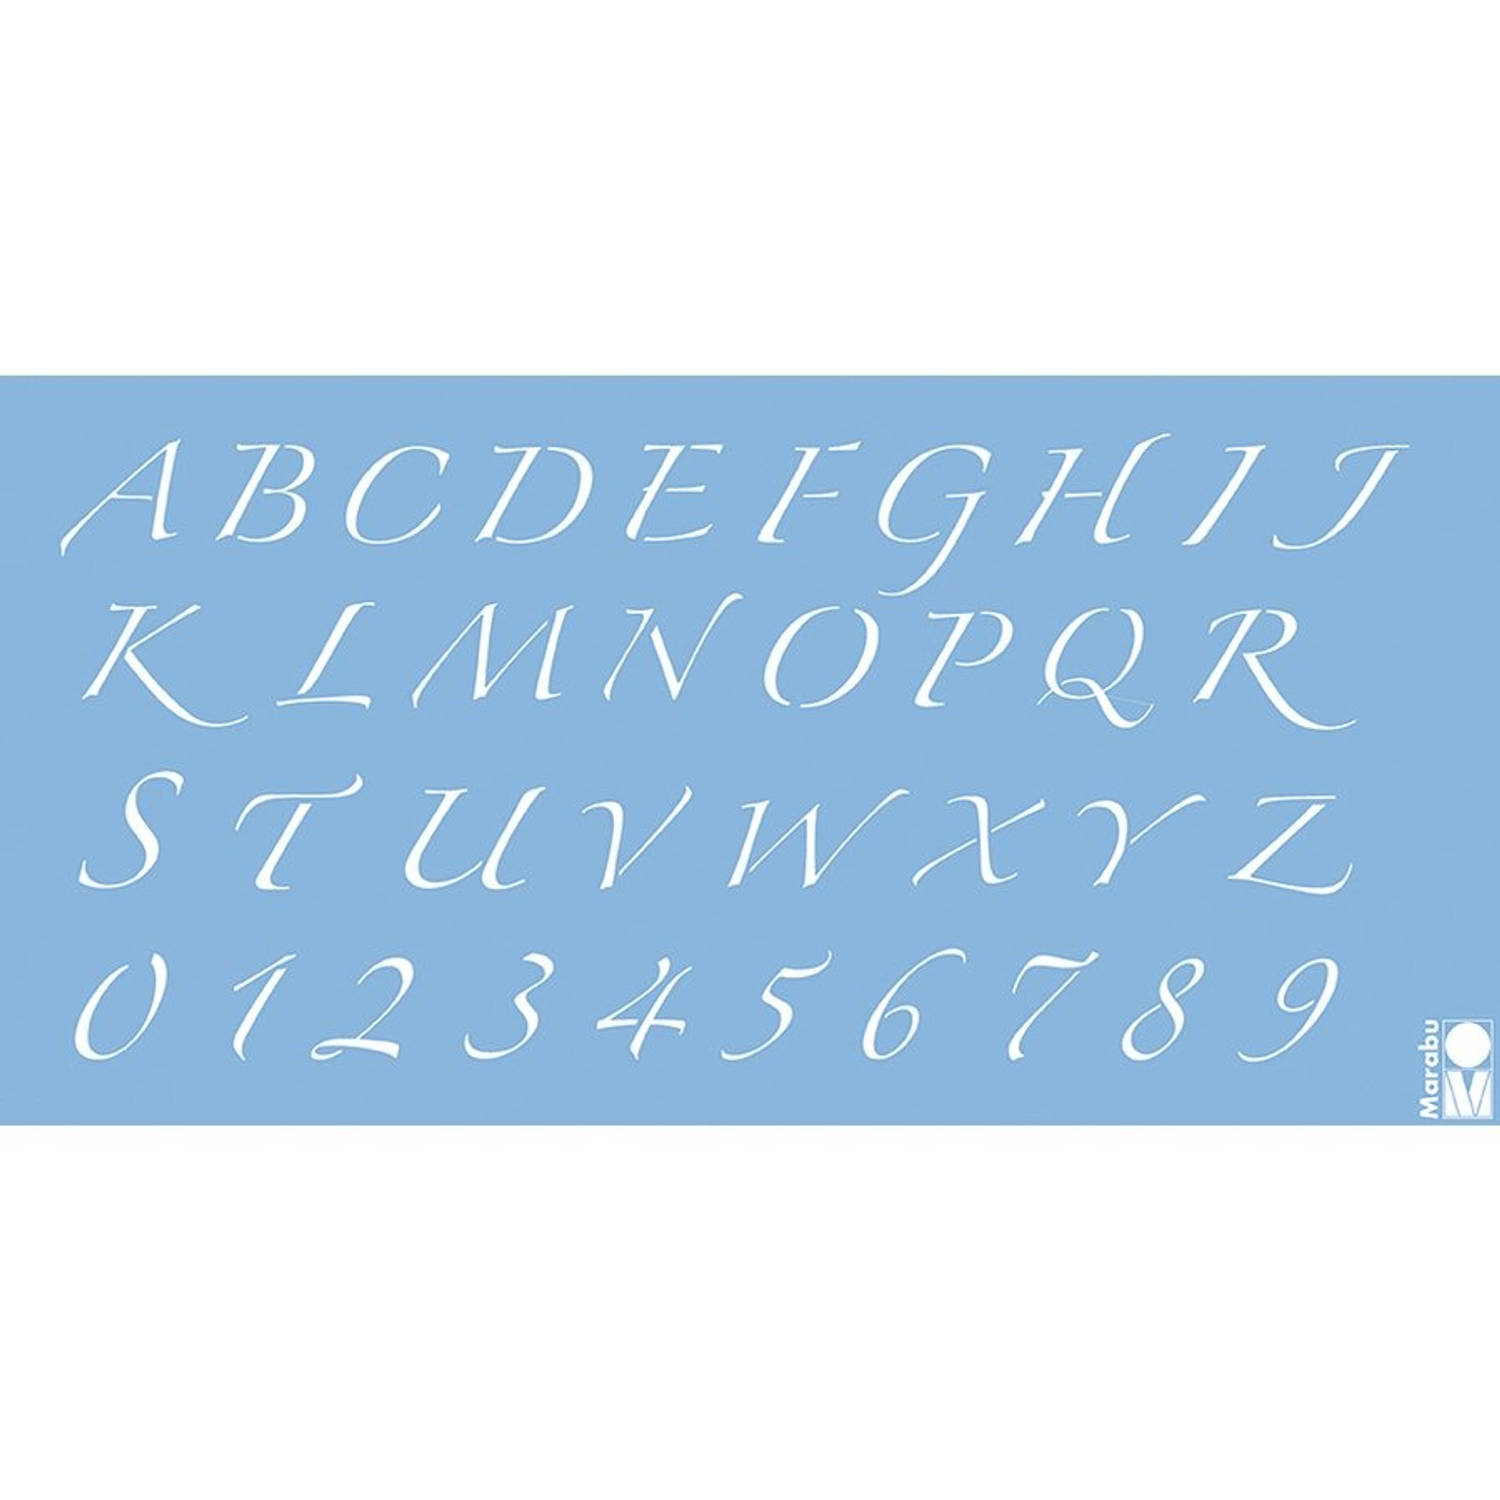 Marabu Sjabloon Alfabet en Nummers 15 x 10 cm